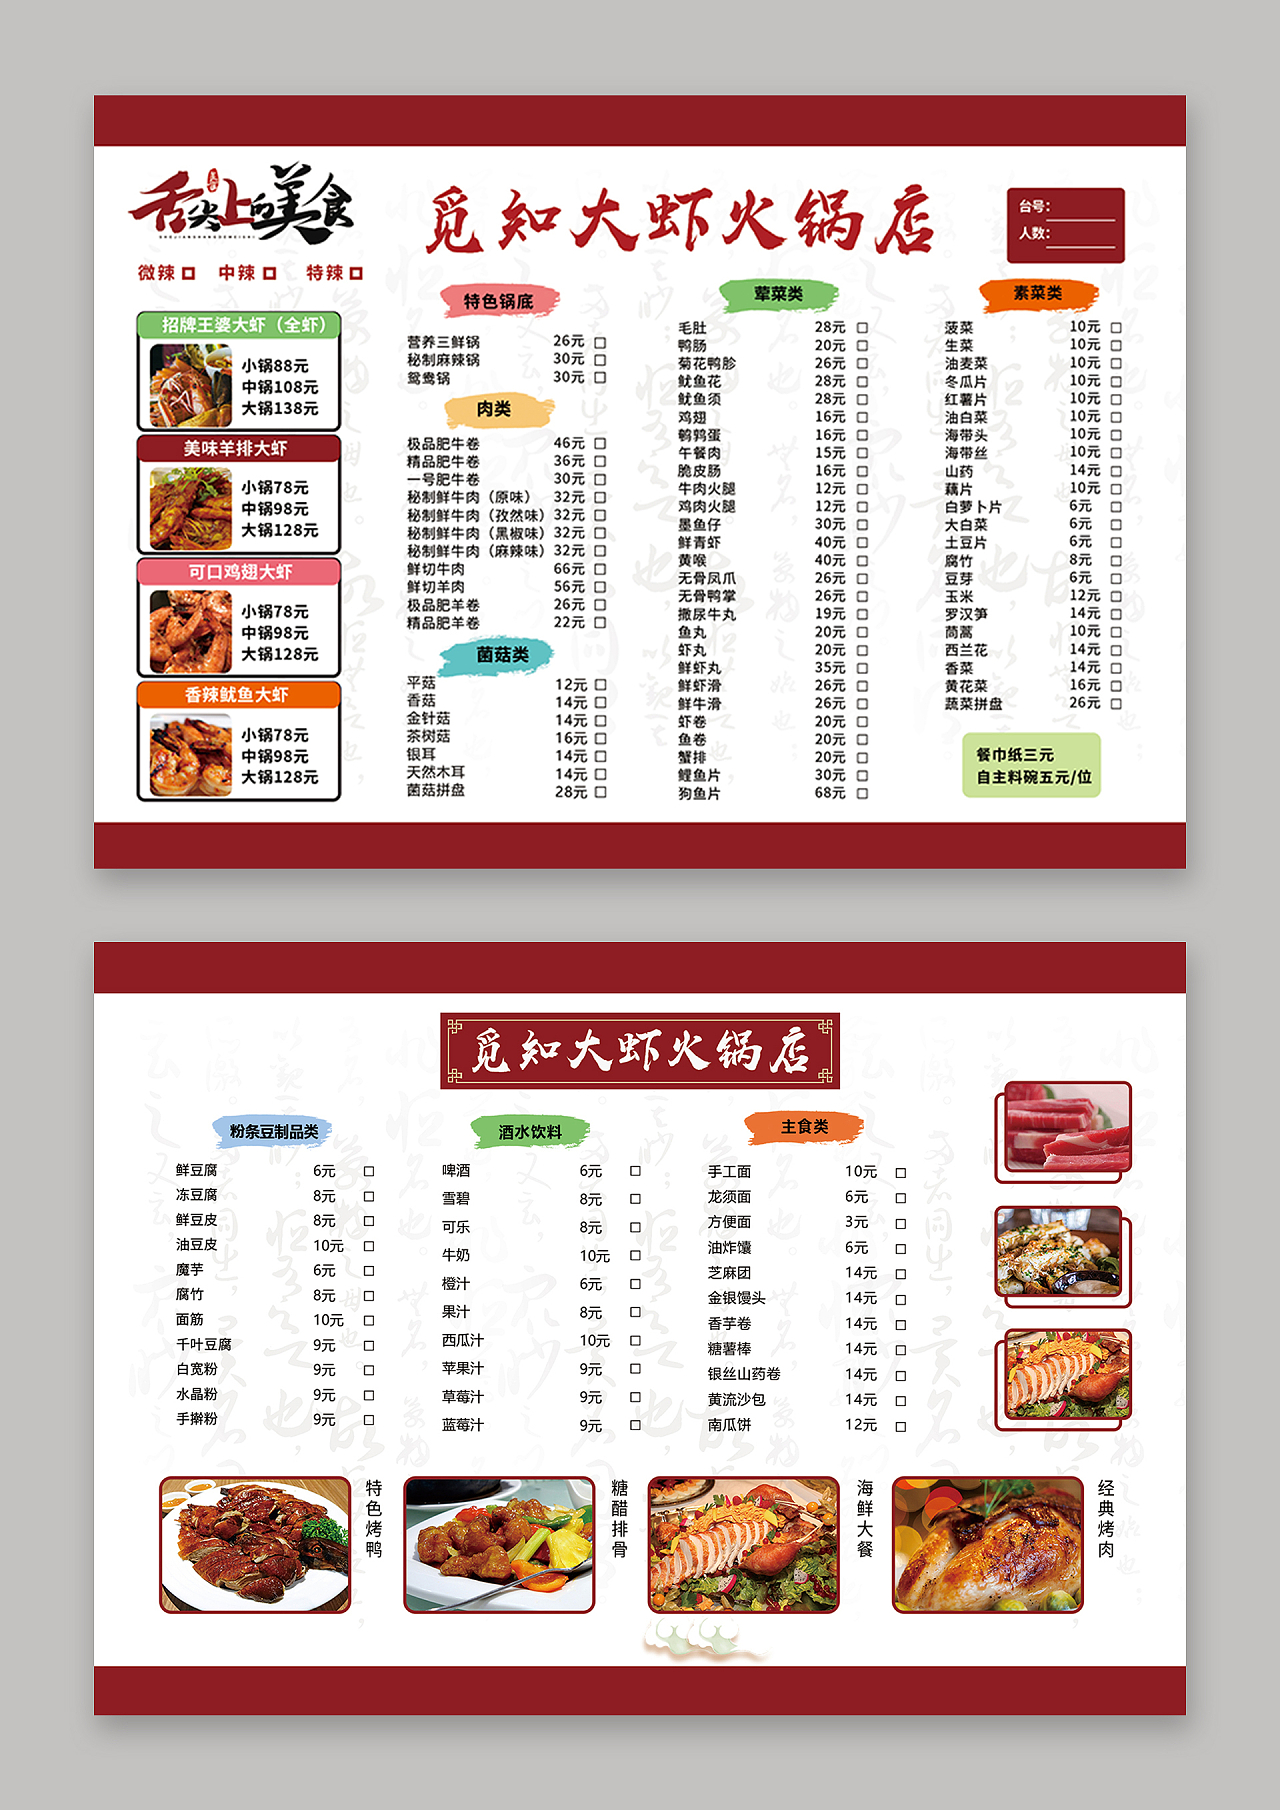 简约大气红色舌尖上的美食大虾火锅店虾火锅菜单